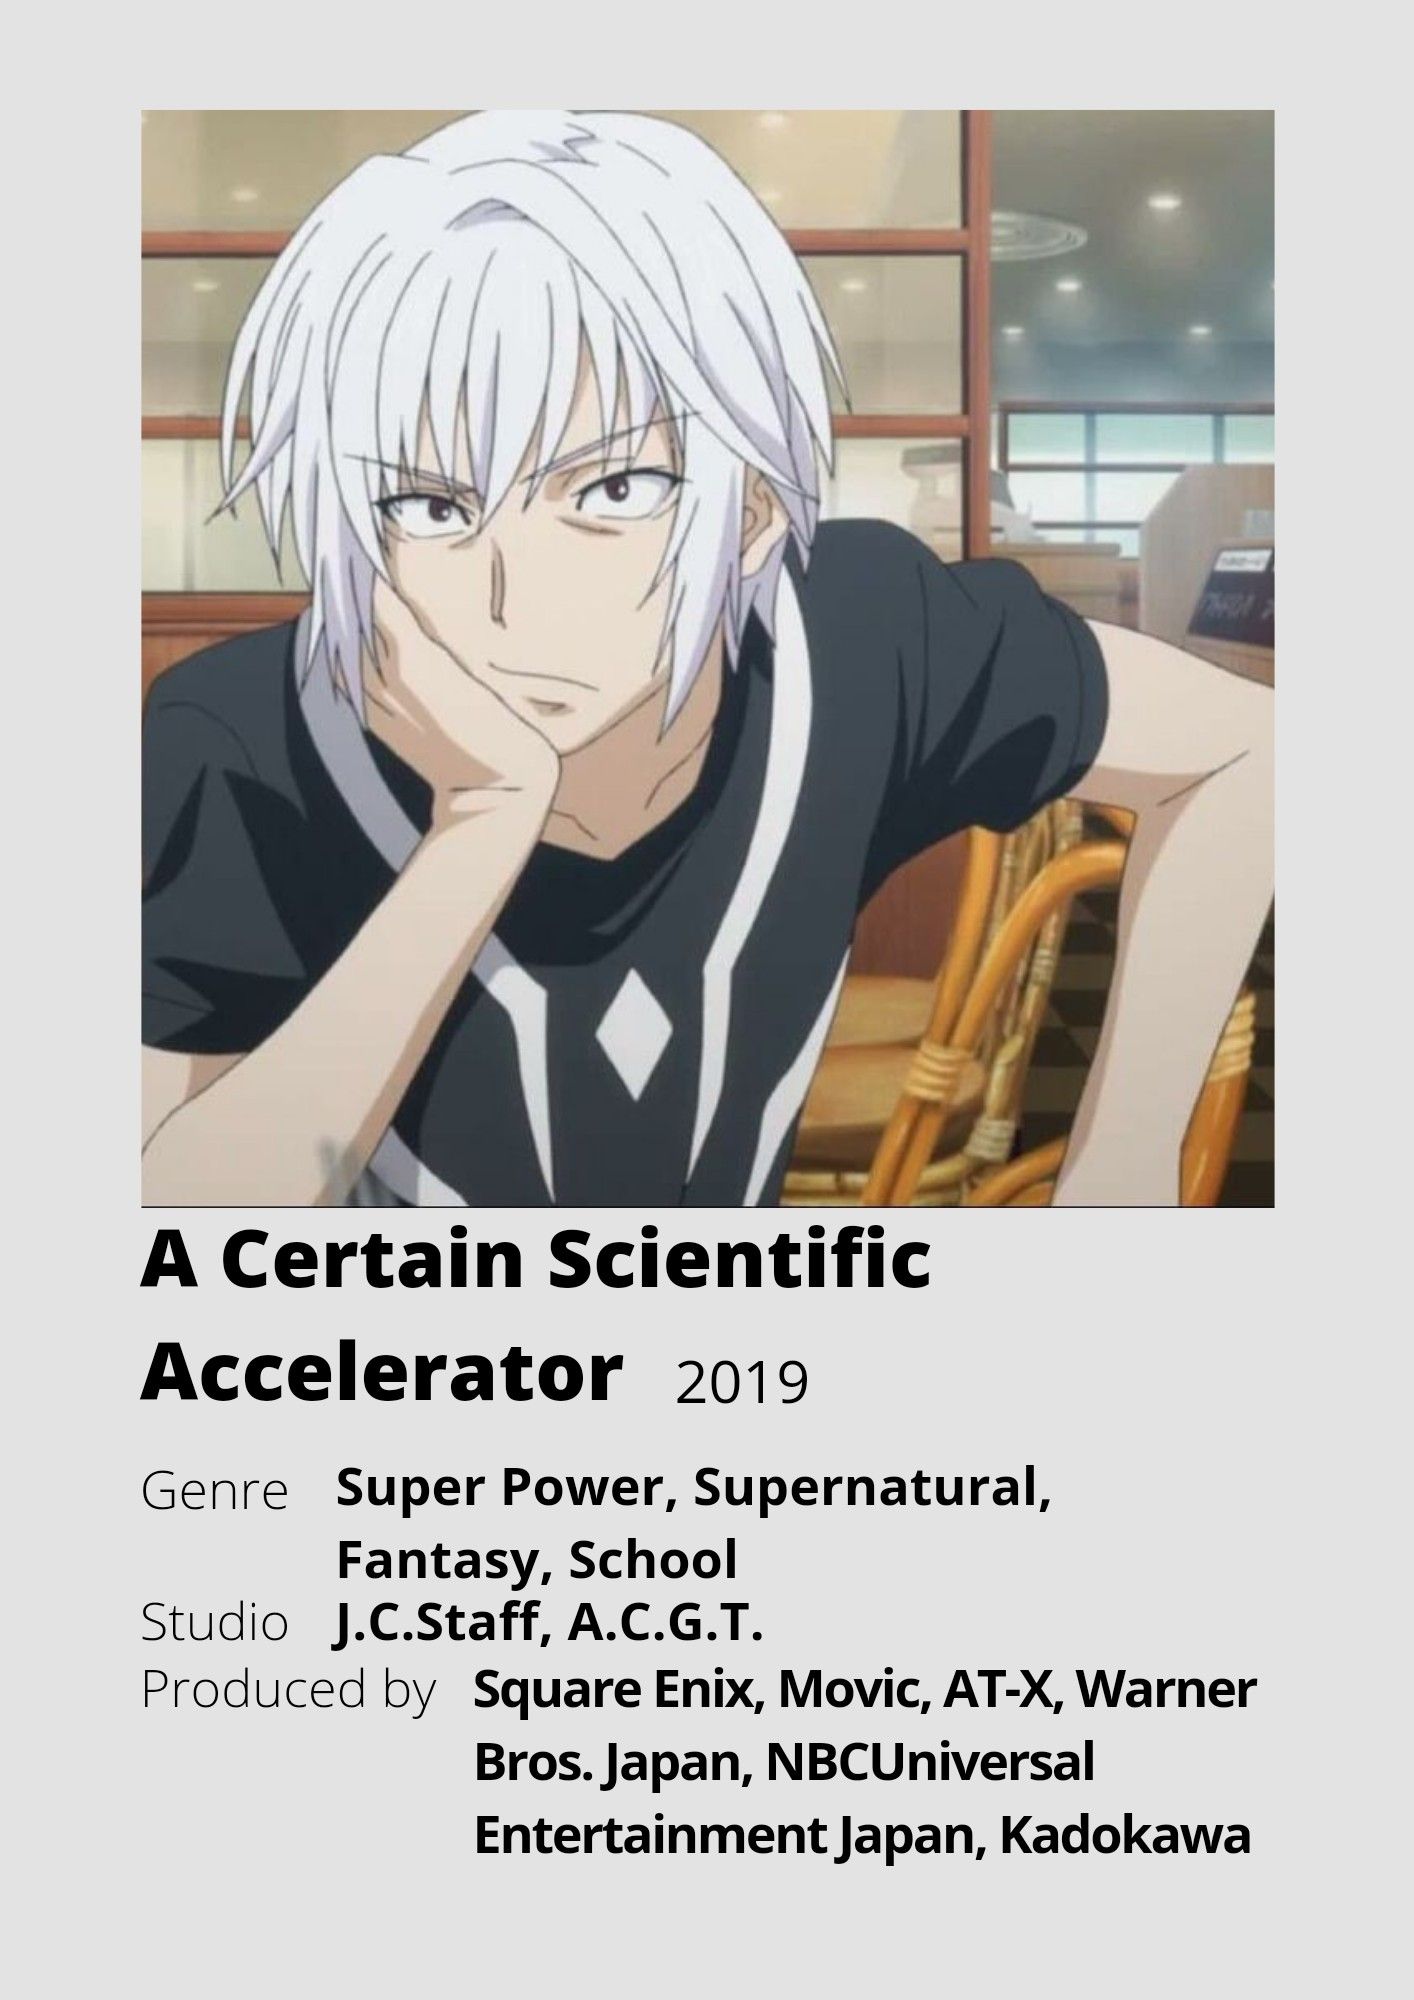 A Certain Scientific Accelerator